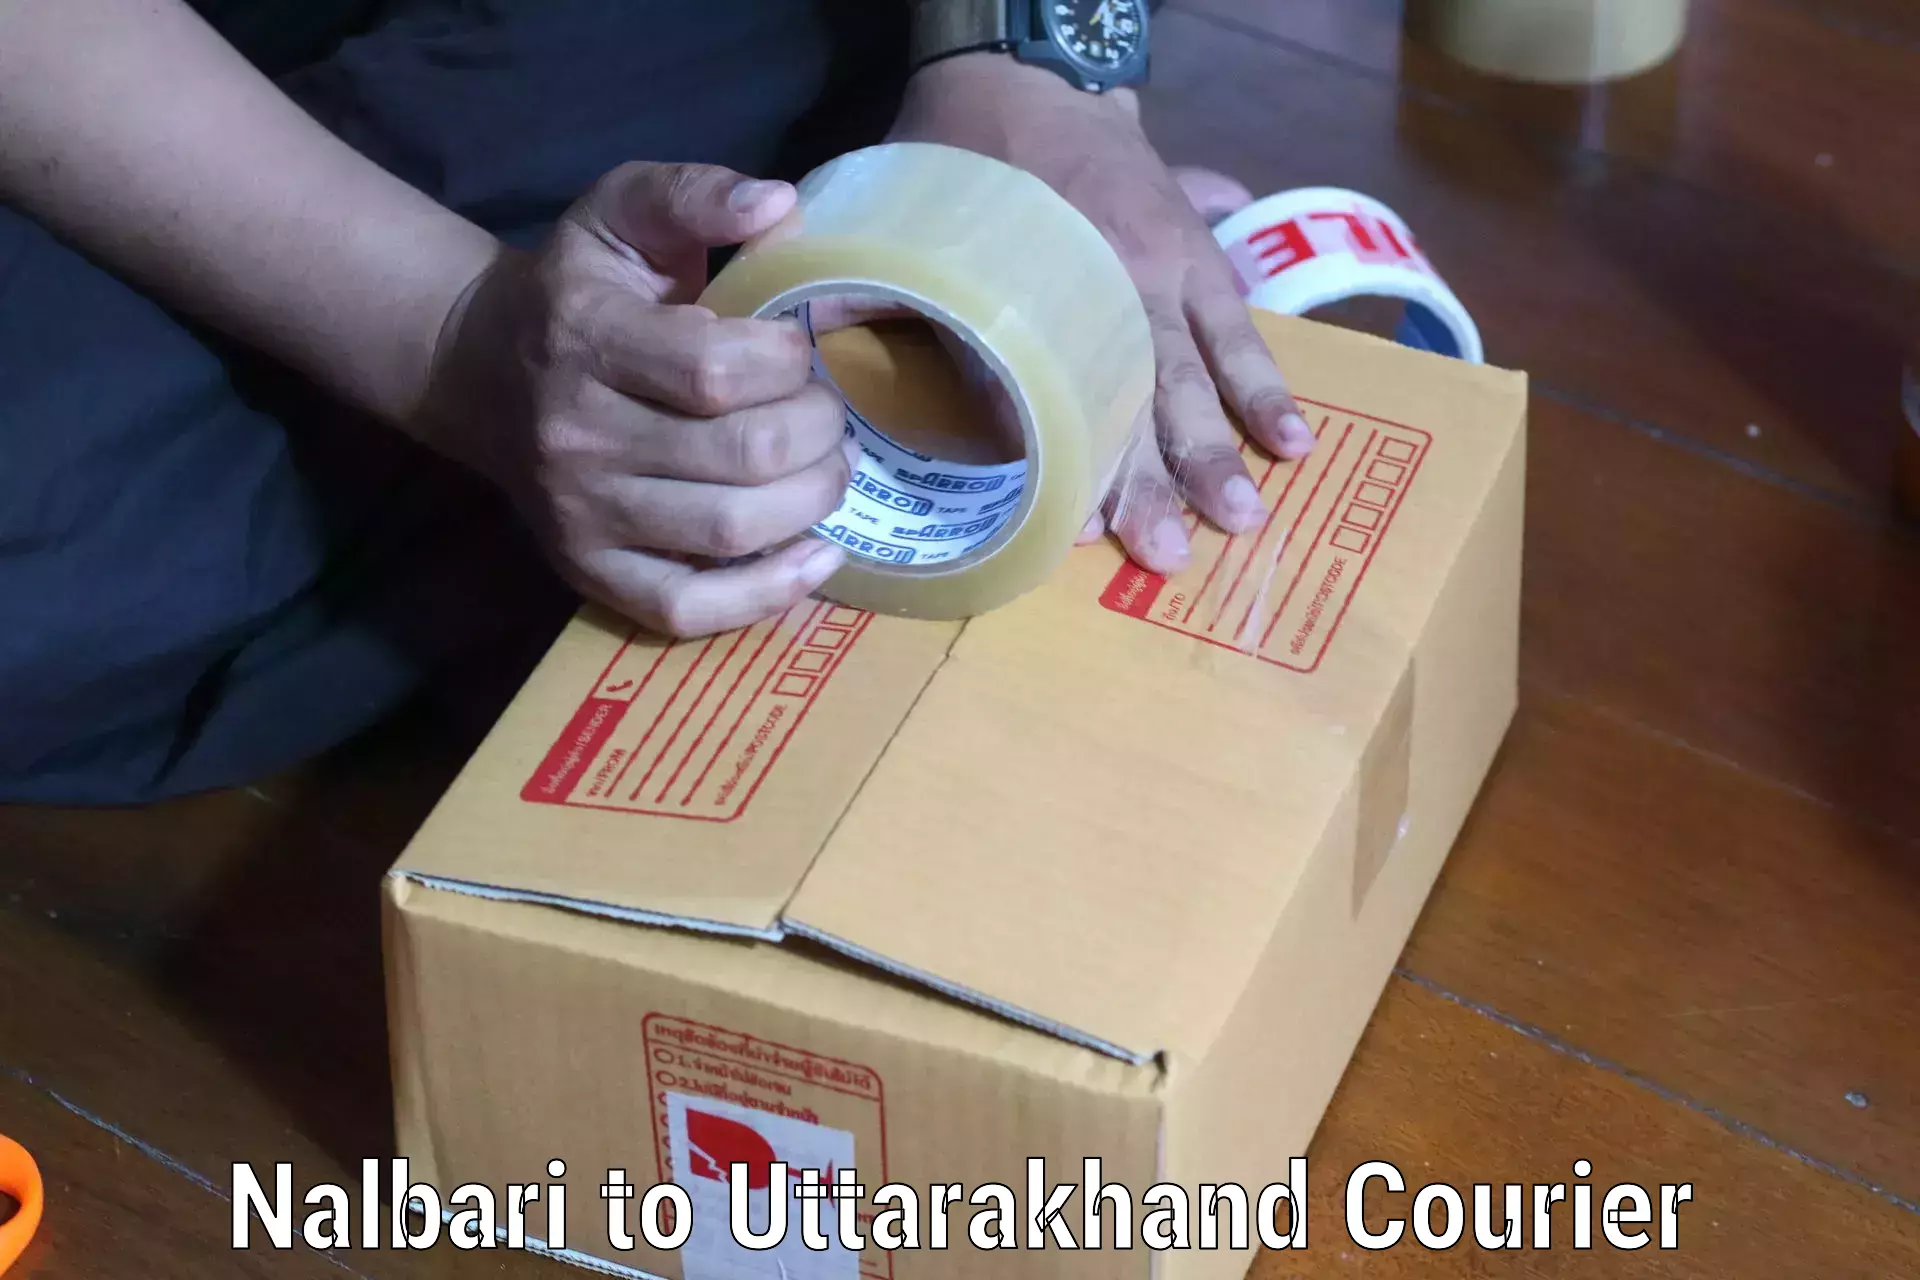 Affordable parcel service Nalbari to Nainital